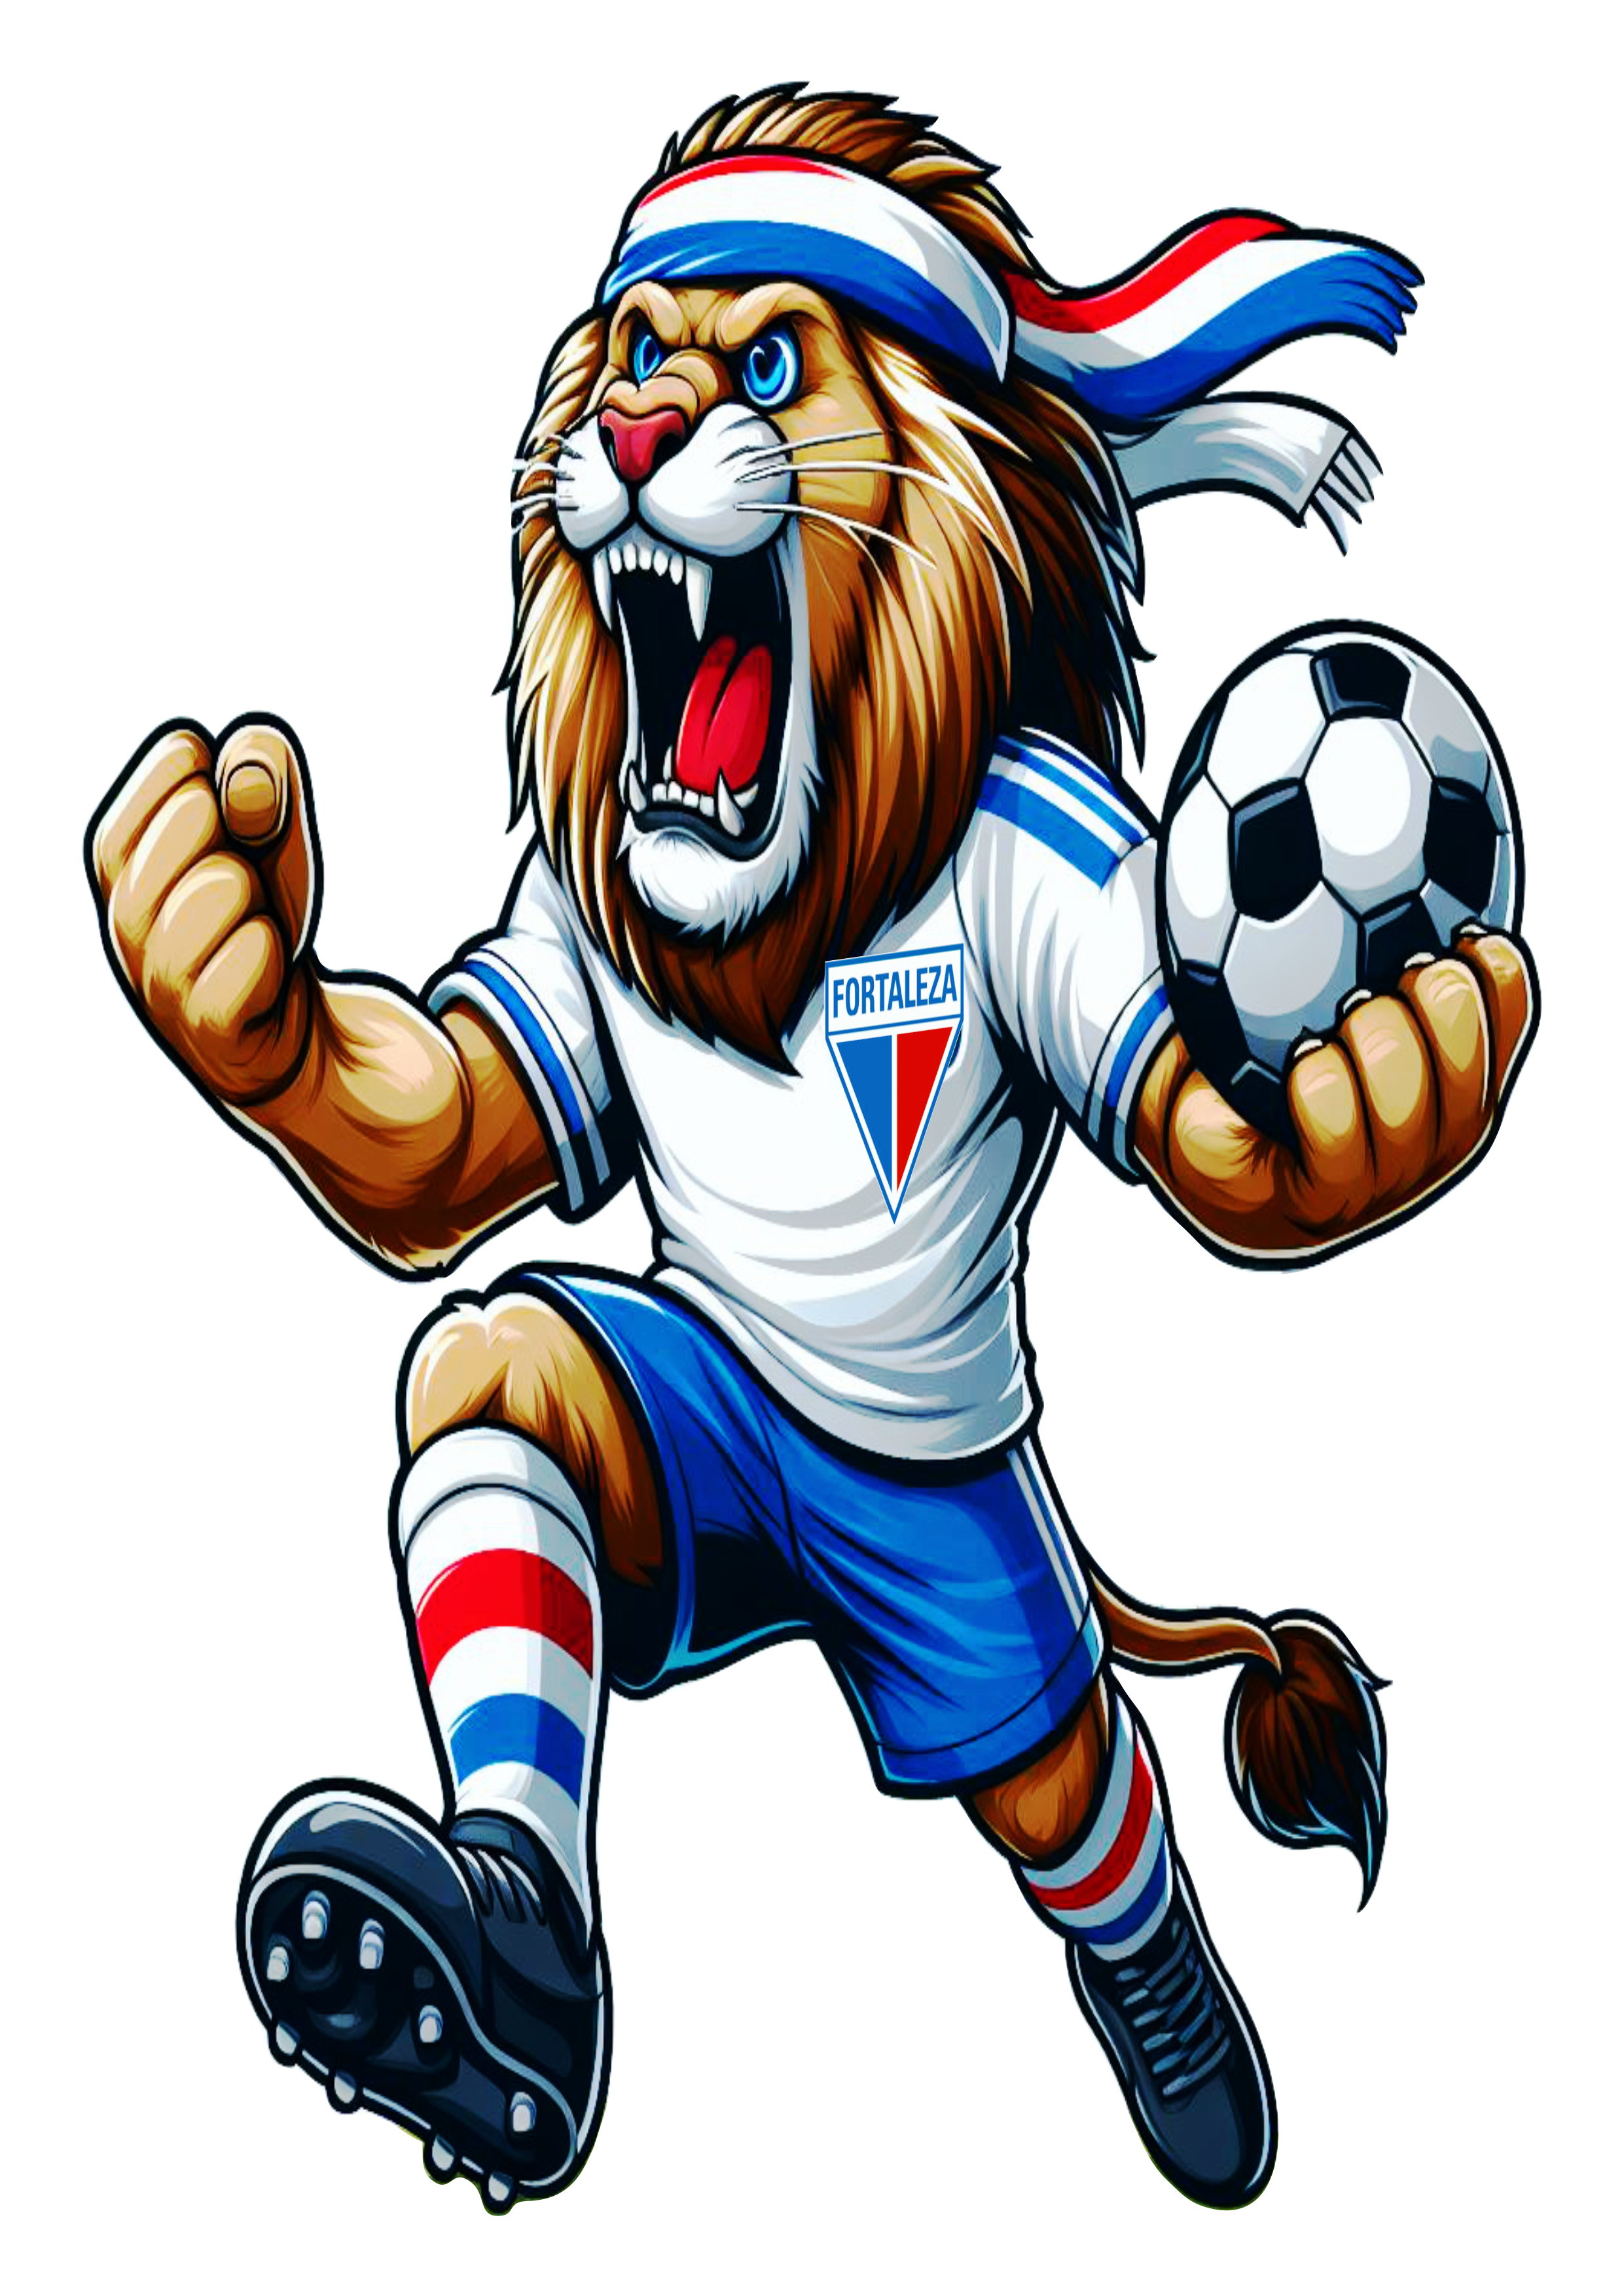 Fortaleza campeão leão mascote ilustração grátis para designer estampa de camiseta free download png desenho colorido